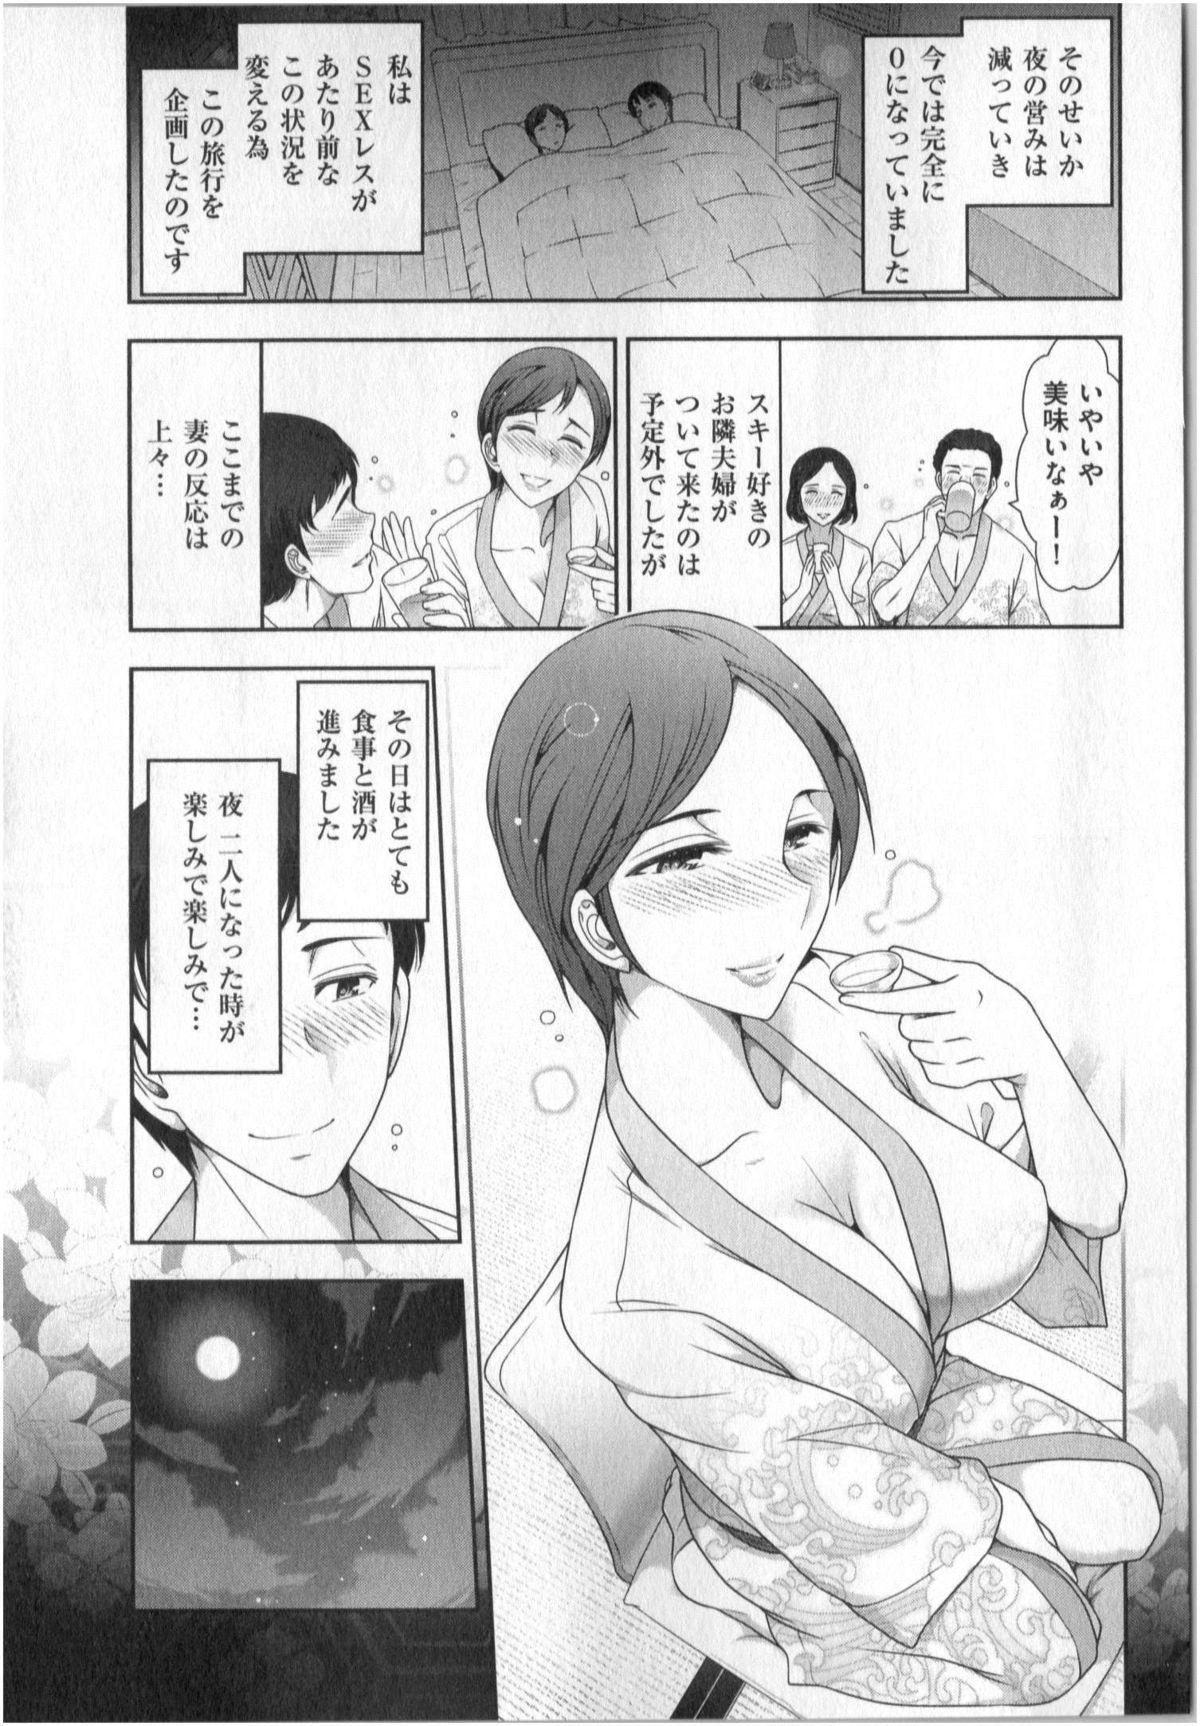 Yonimo Ecchi na Toshidensetsu vol. 01 106